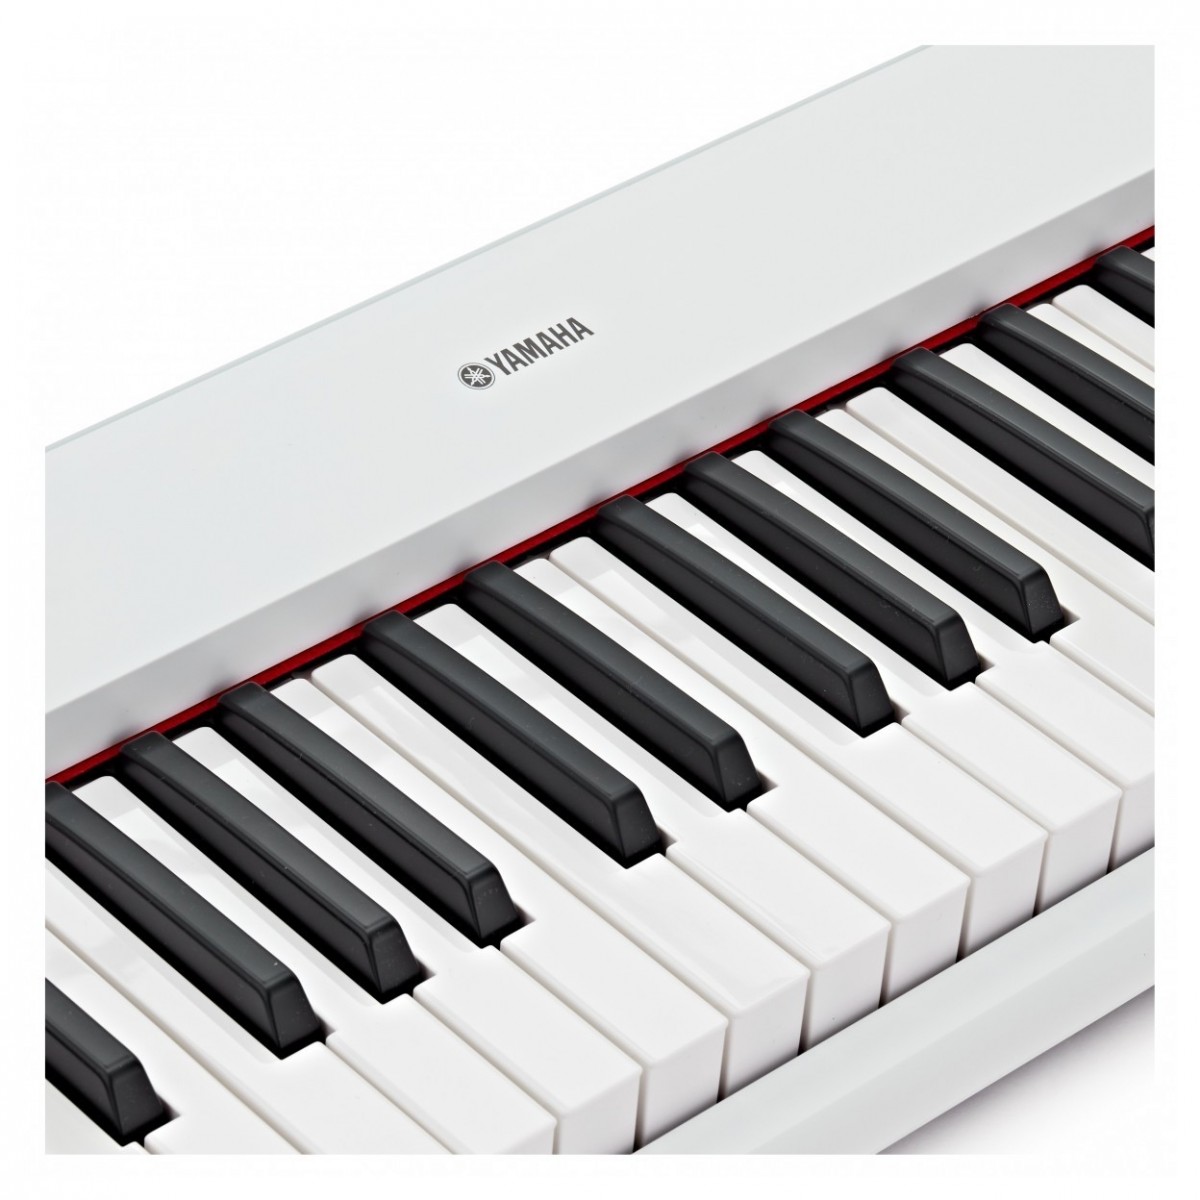 Yamaha Np-15 Wh - Portable digital piano - Variation 3